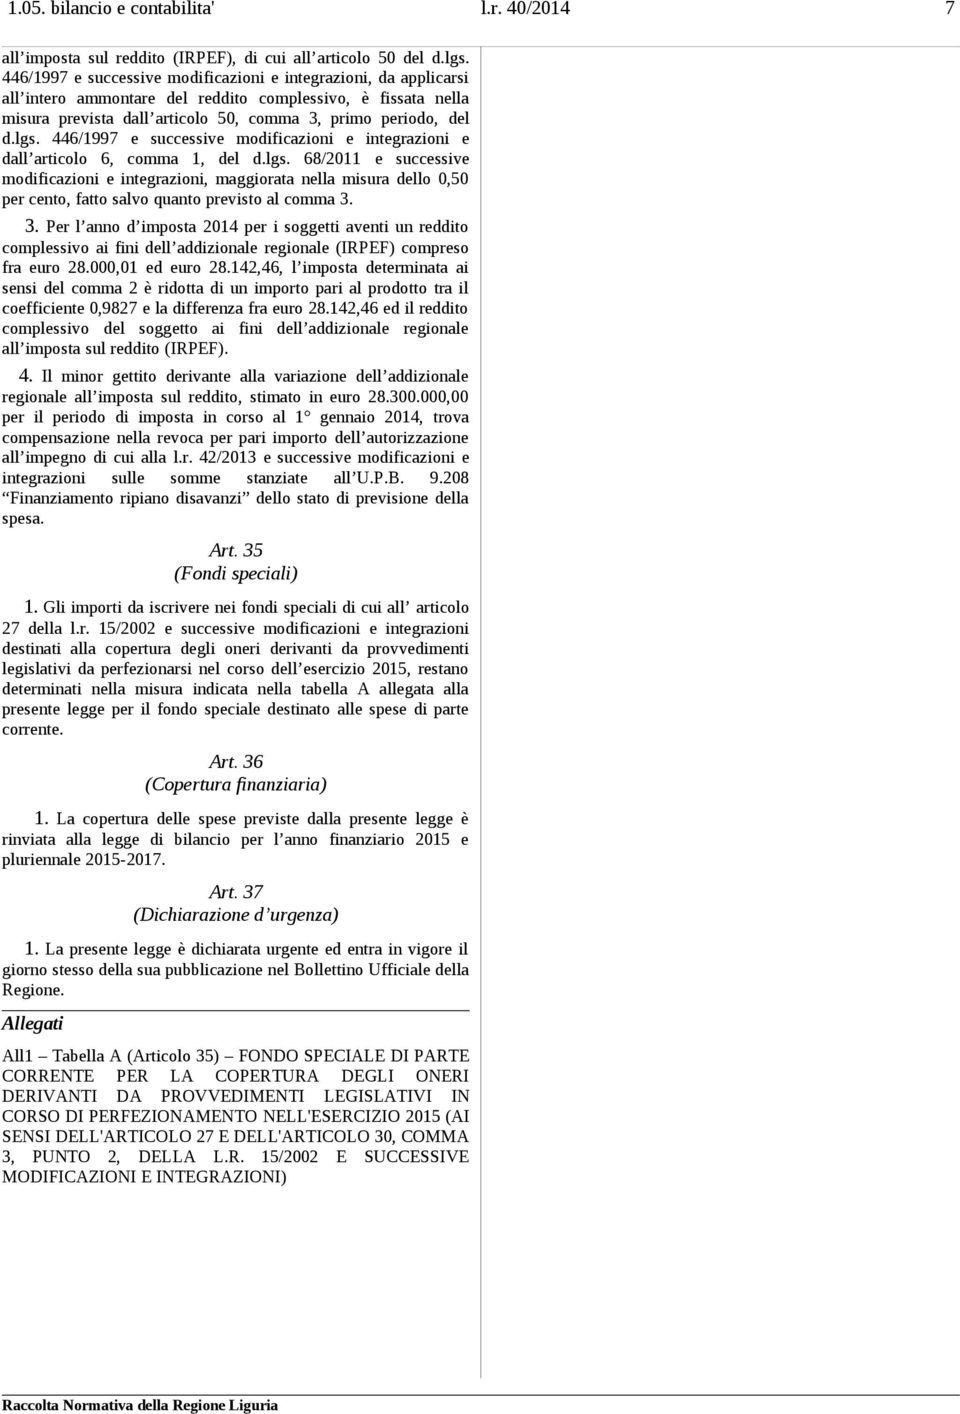 446/1997 e successive modificazioni e integrazioni e dall articolo 6, comma 1, del d.lgs.